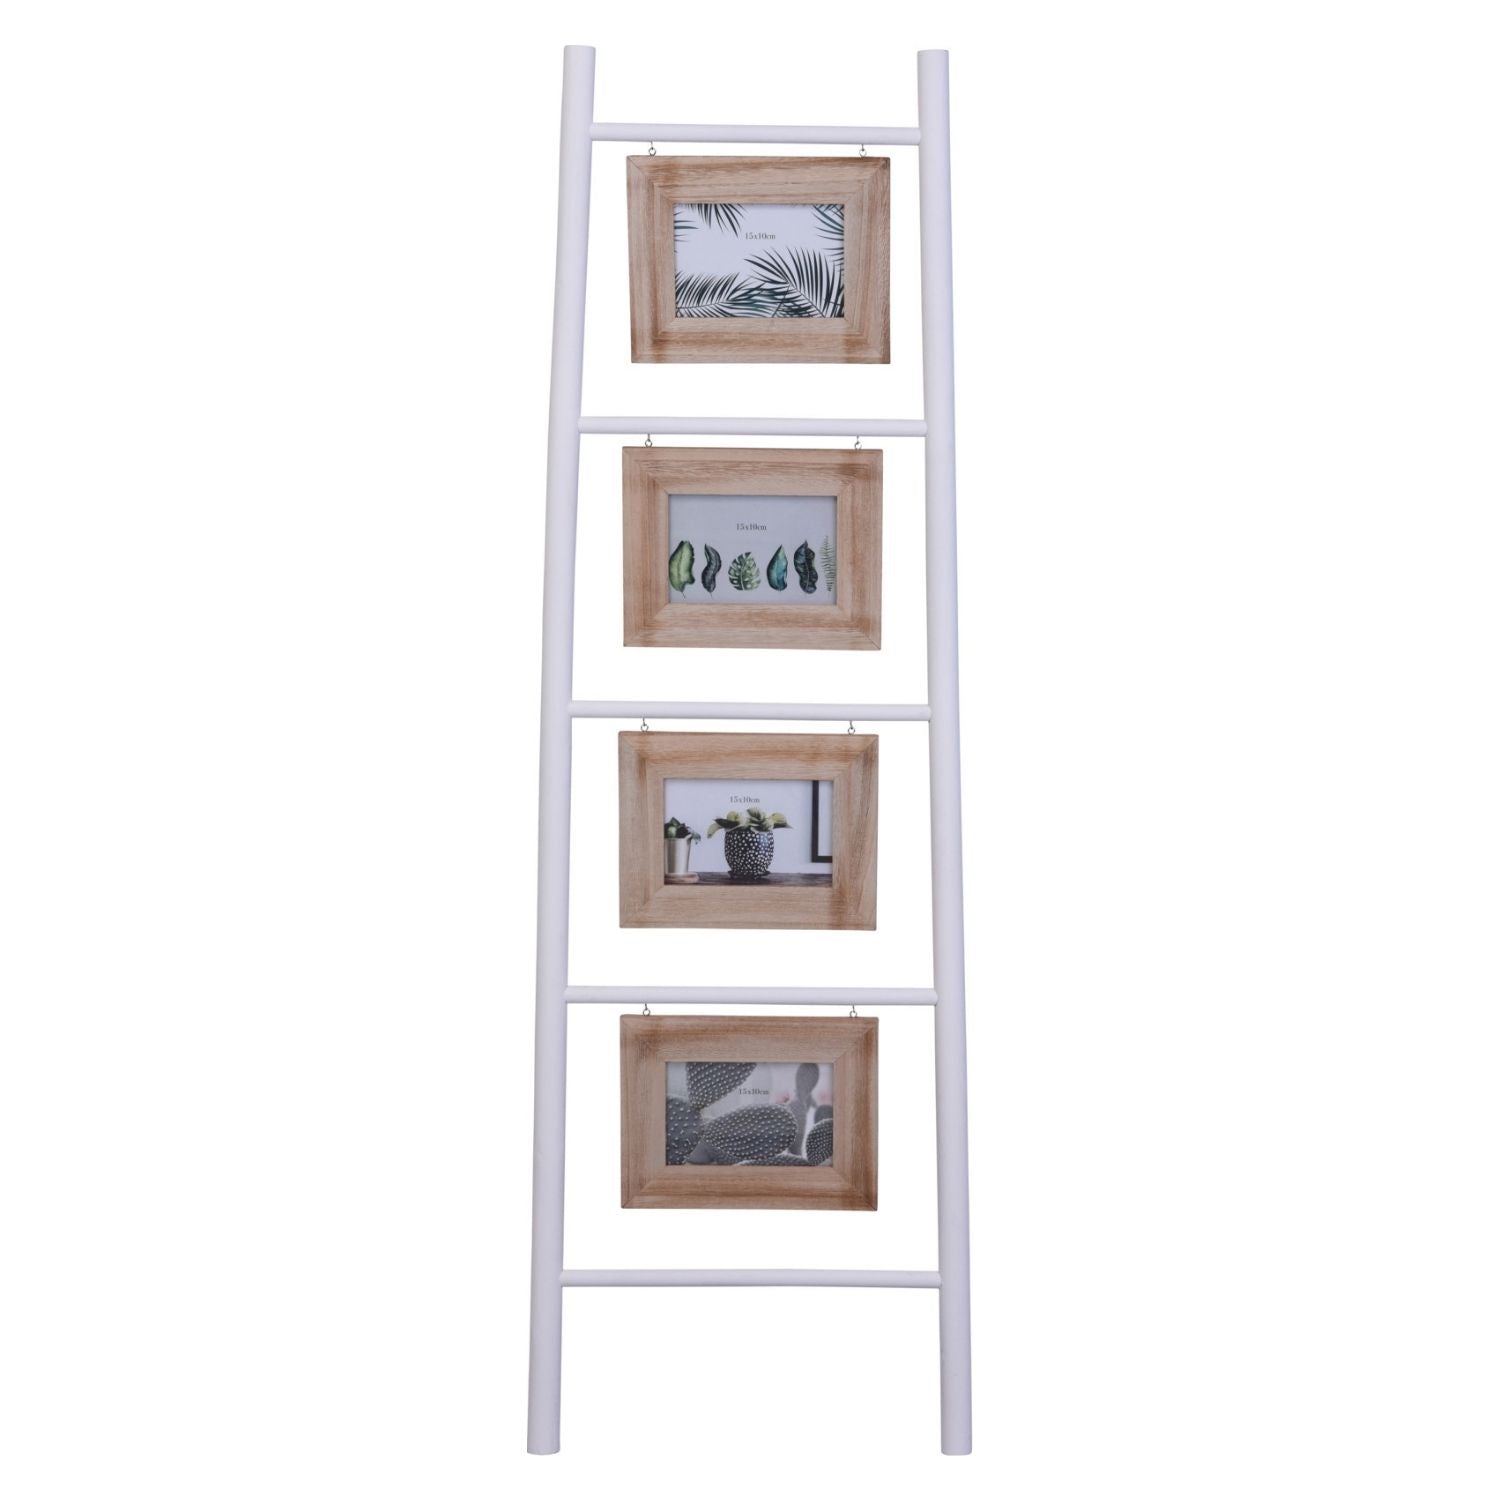 Koopman Photo Frame - Ladder 1 Shaws Department Stores